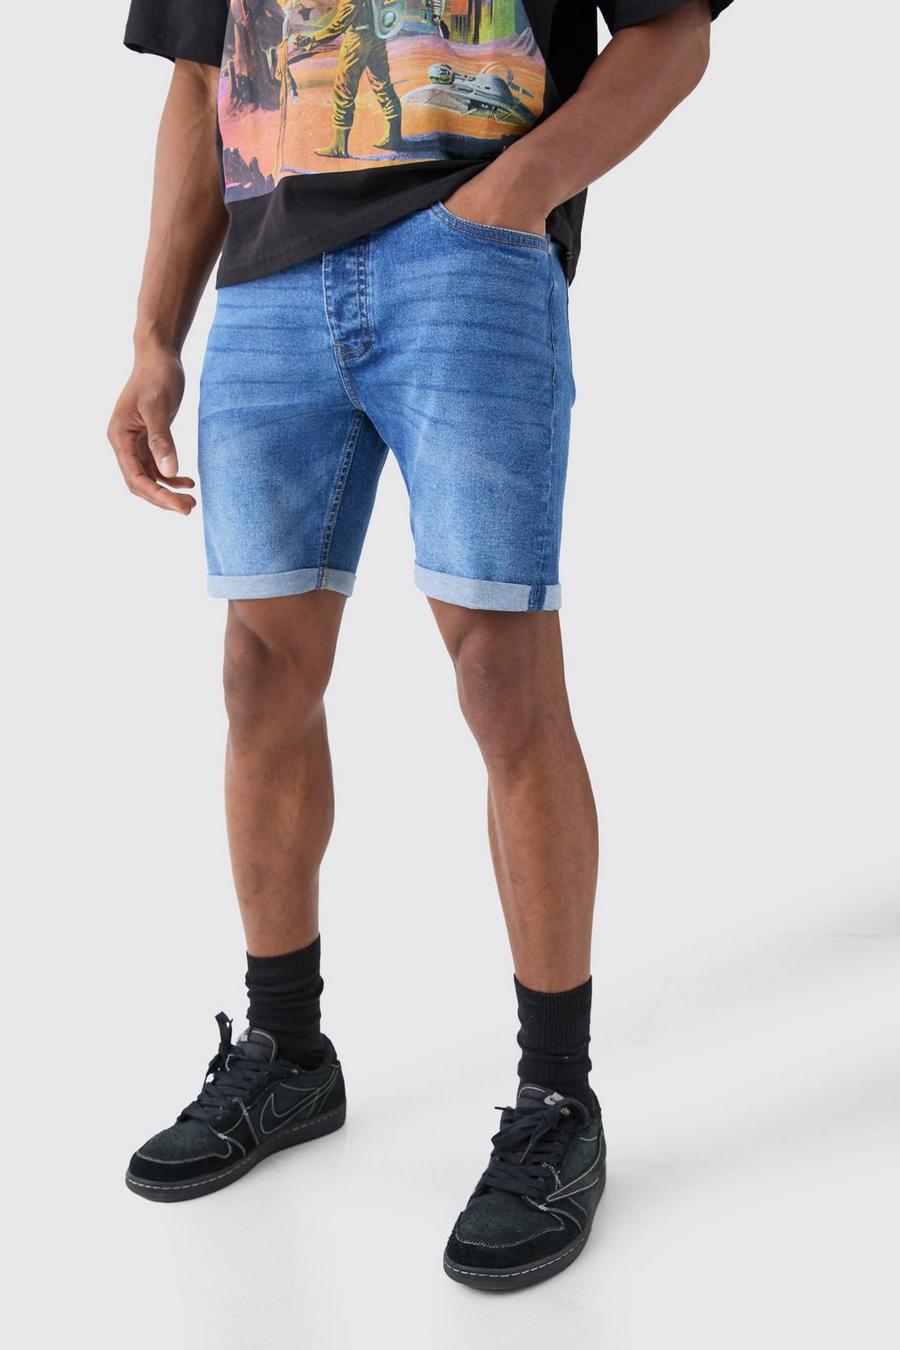 Pantalones cortos vaqueros pitillo elásticos en azul medio, Mid blue